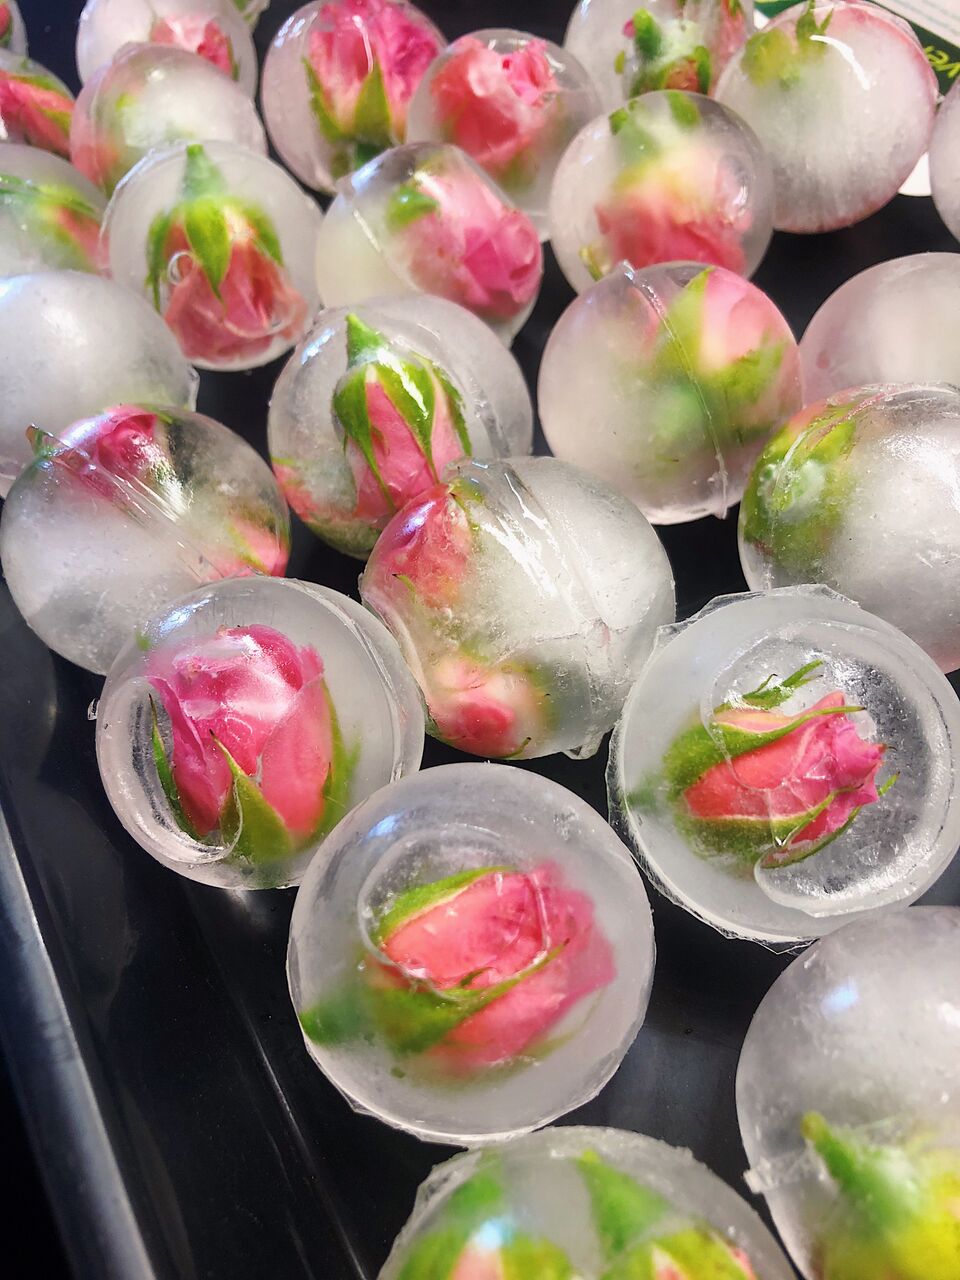 Rose petal ice spheres